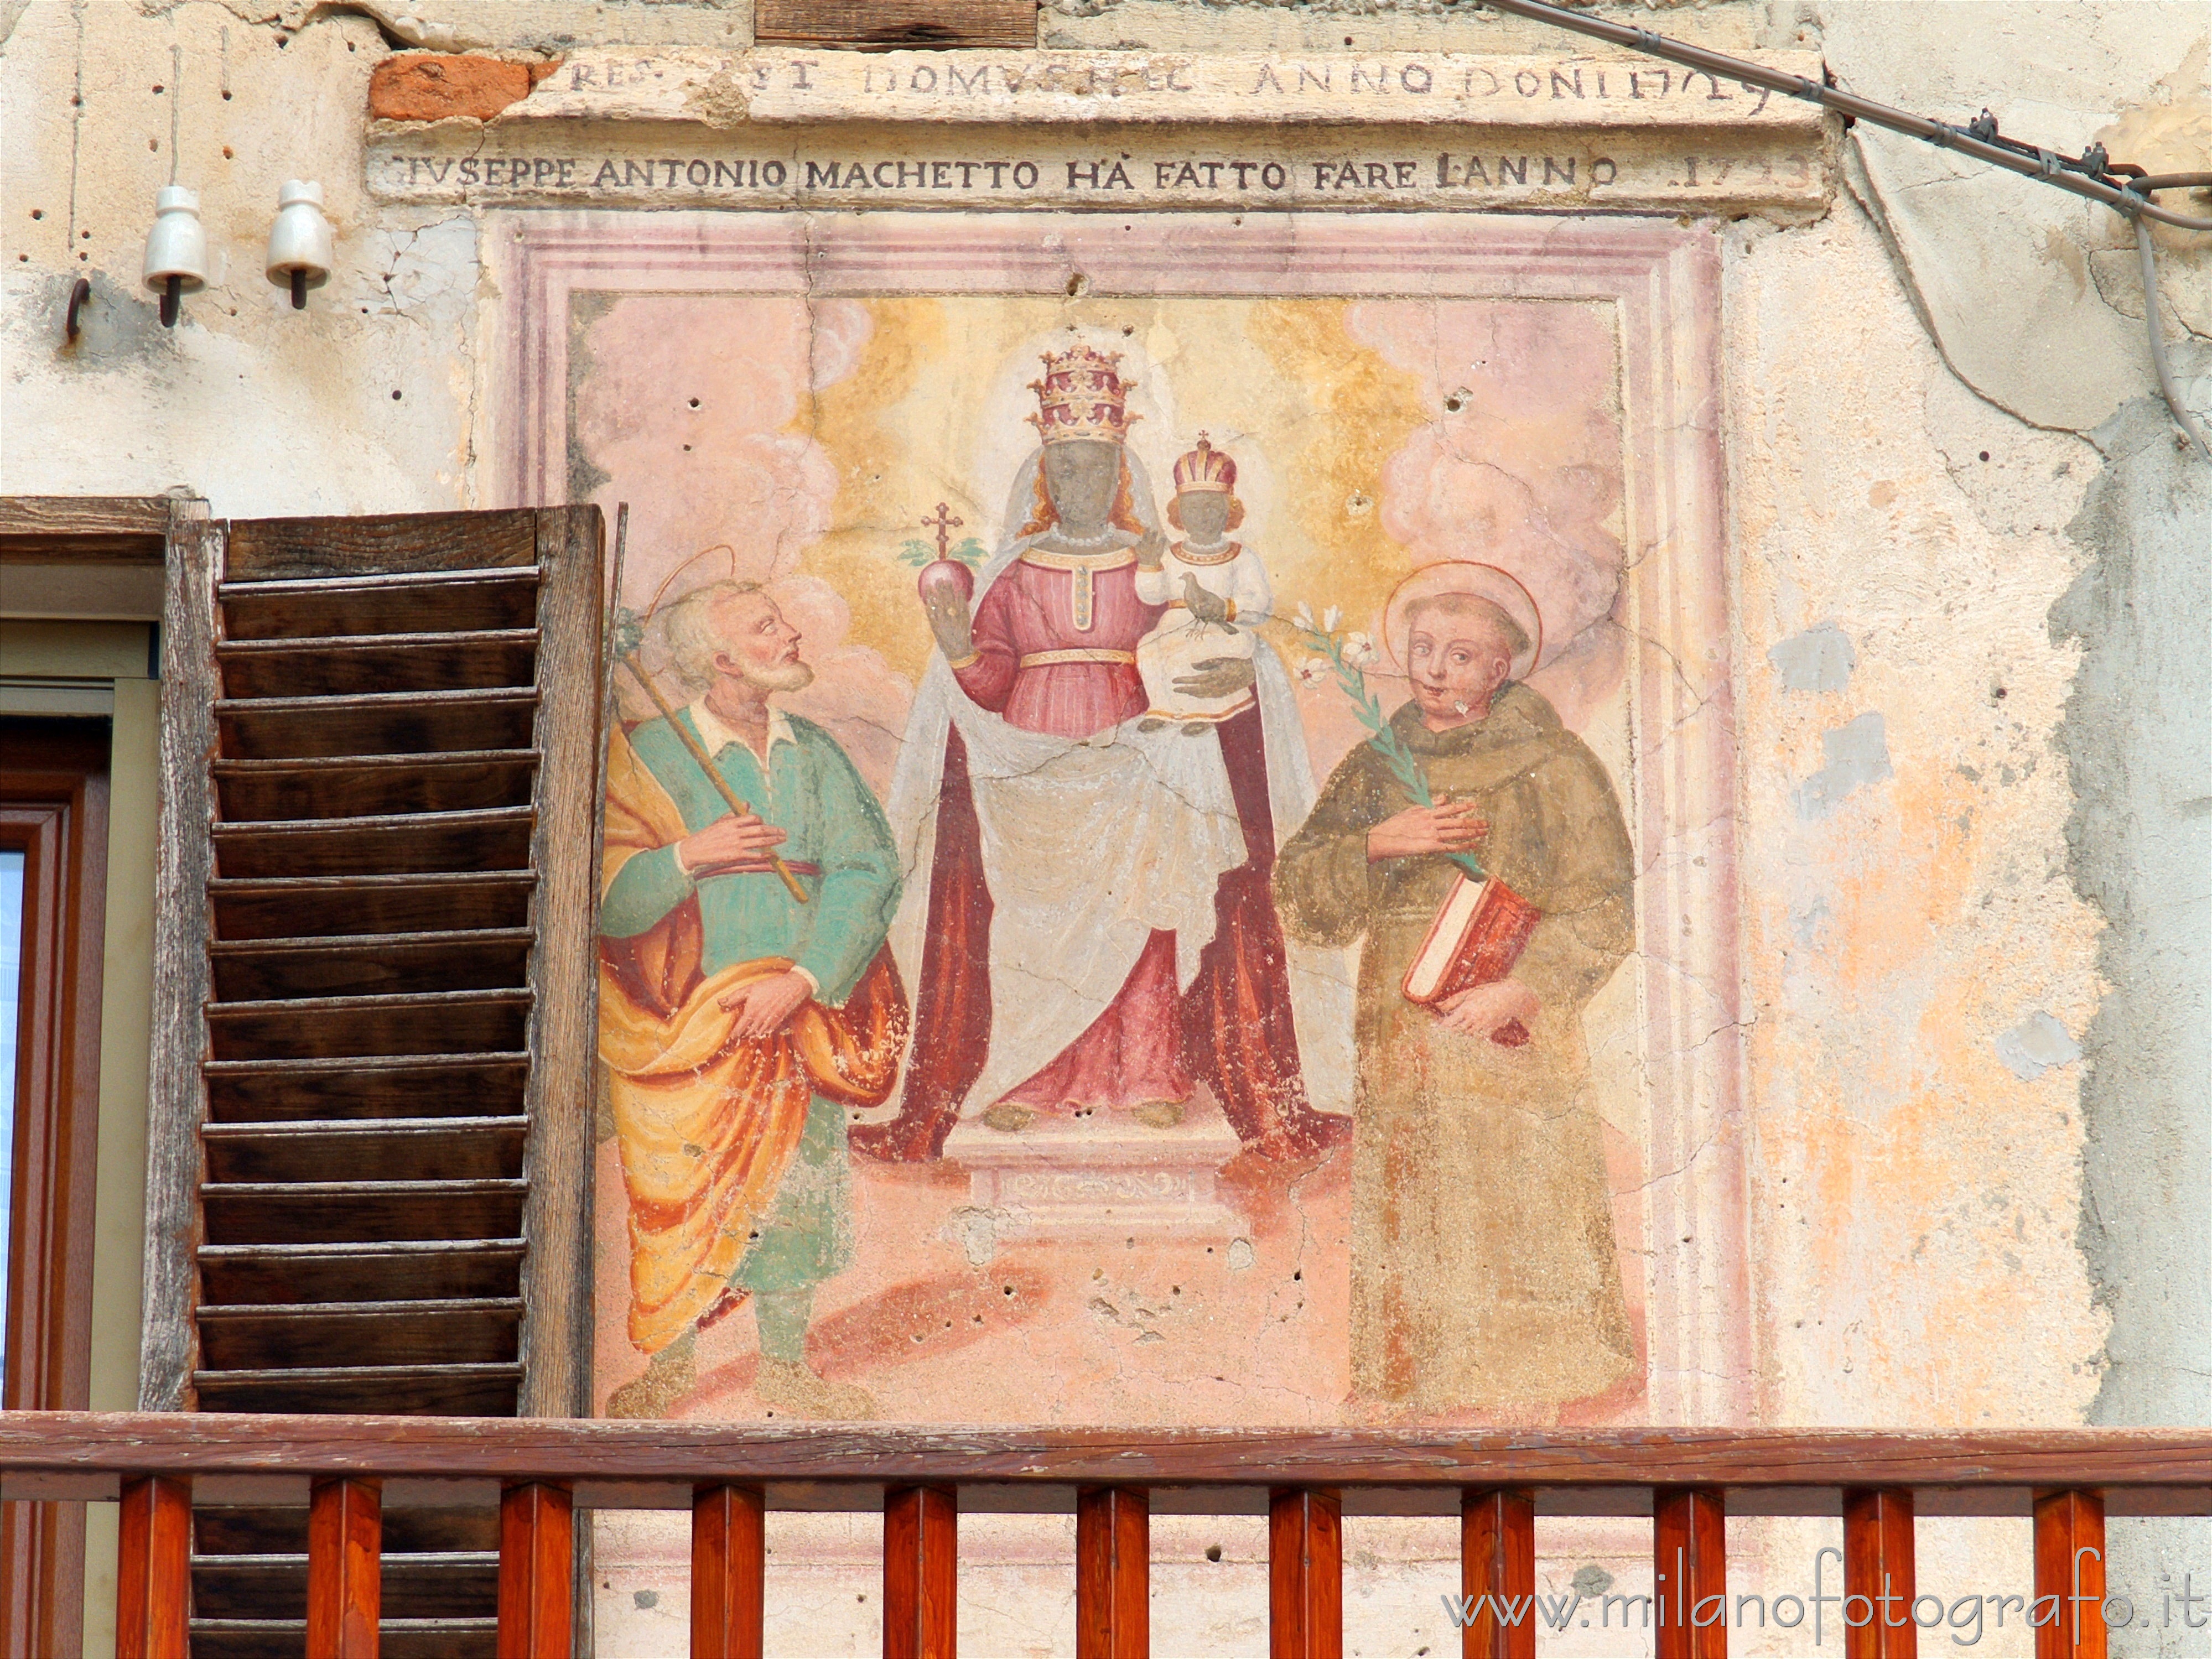 Quittengo frazione di Campiglia Cervo (Biella): Affresco della Madonna di Oropa sul muro di una casa - Quittengo frazione di Campiglia Cervo (Biella)